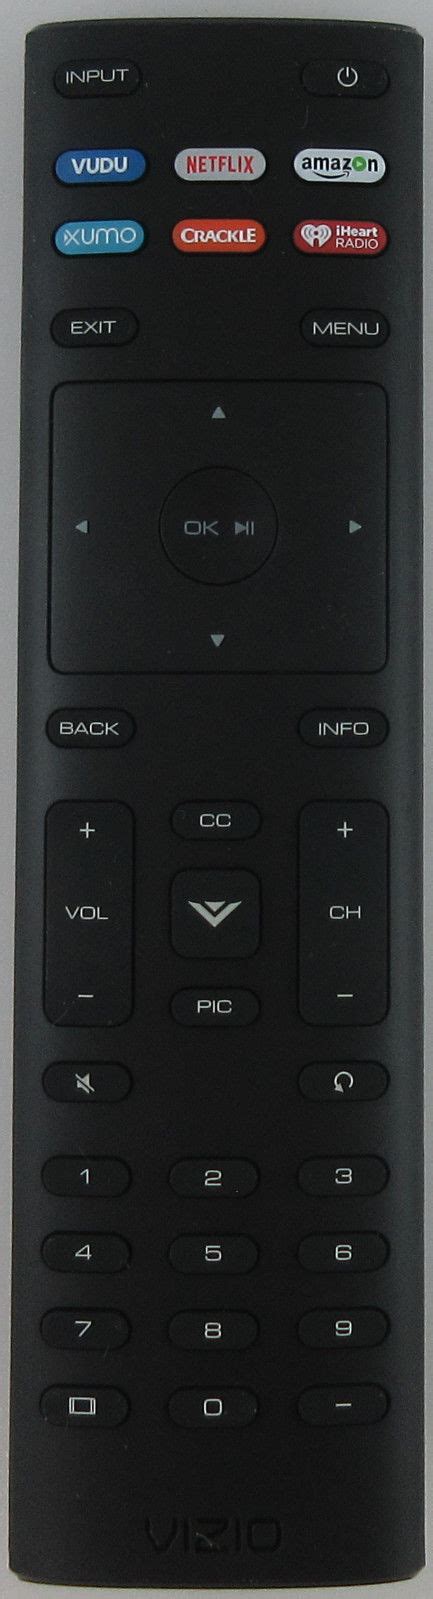 Tvparts Ca Vizio Xrt136 Smart Tv Remote Control